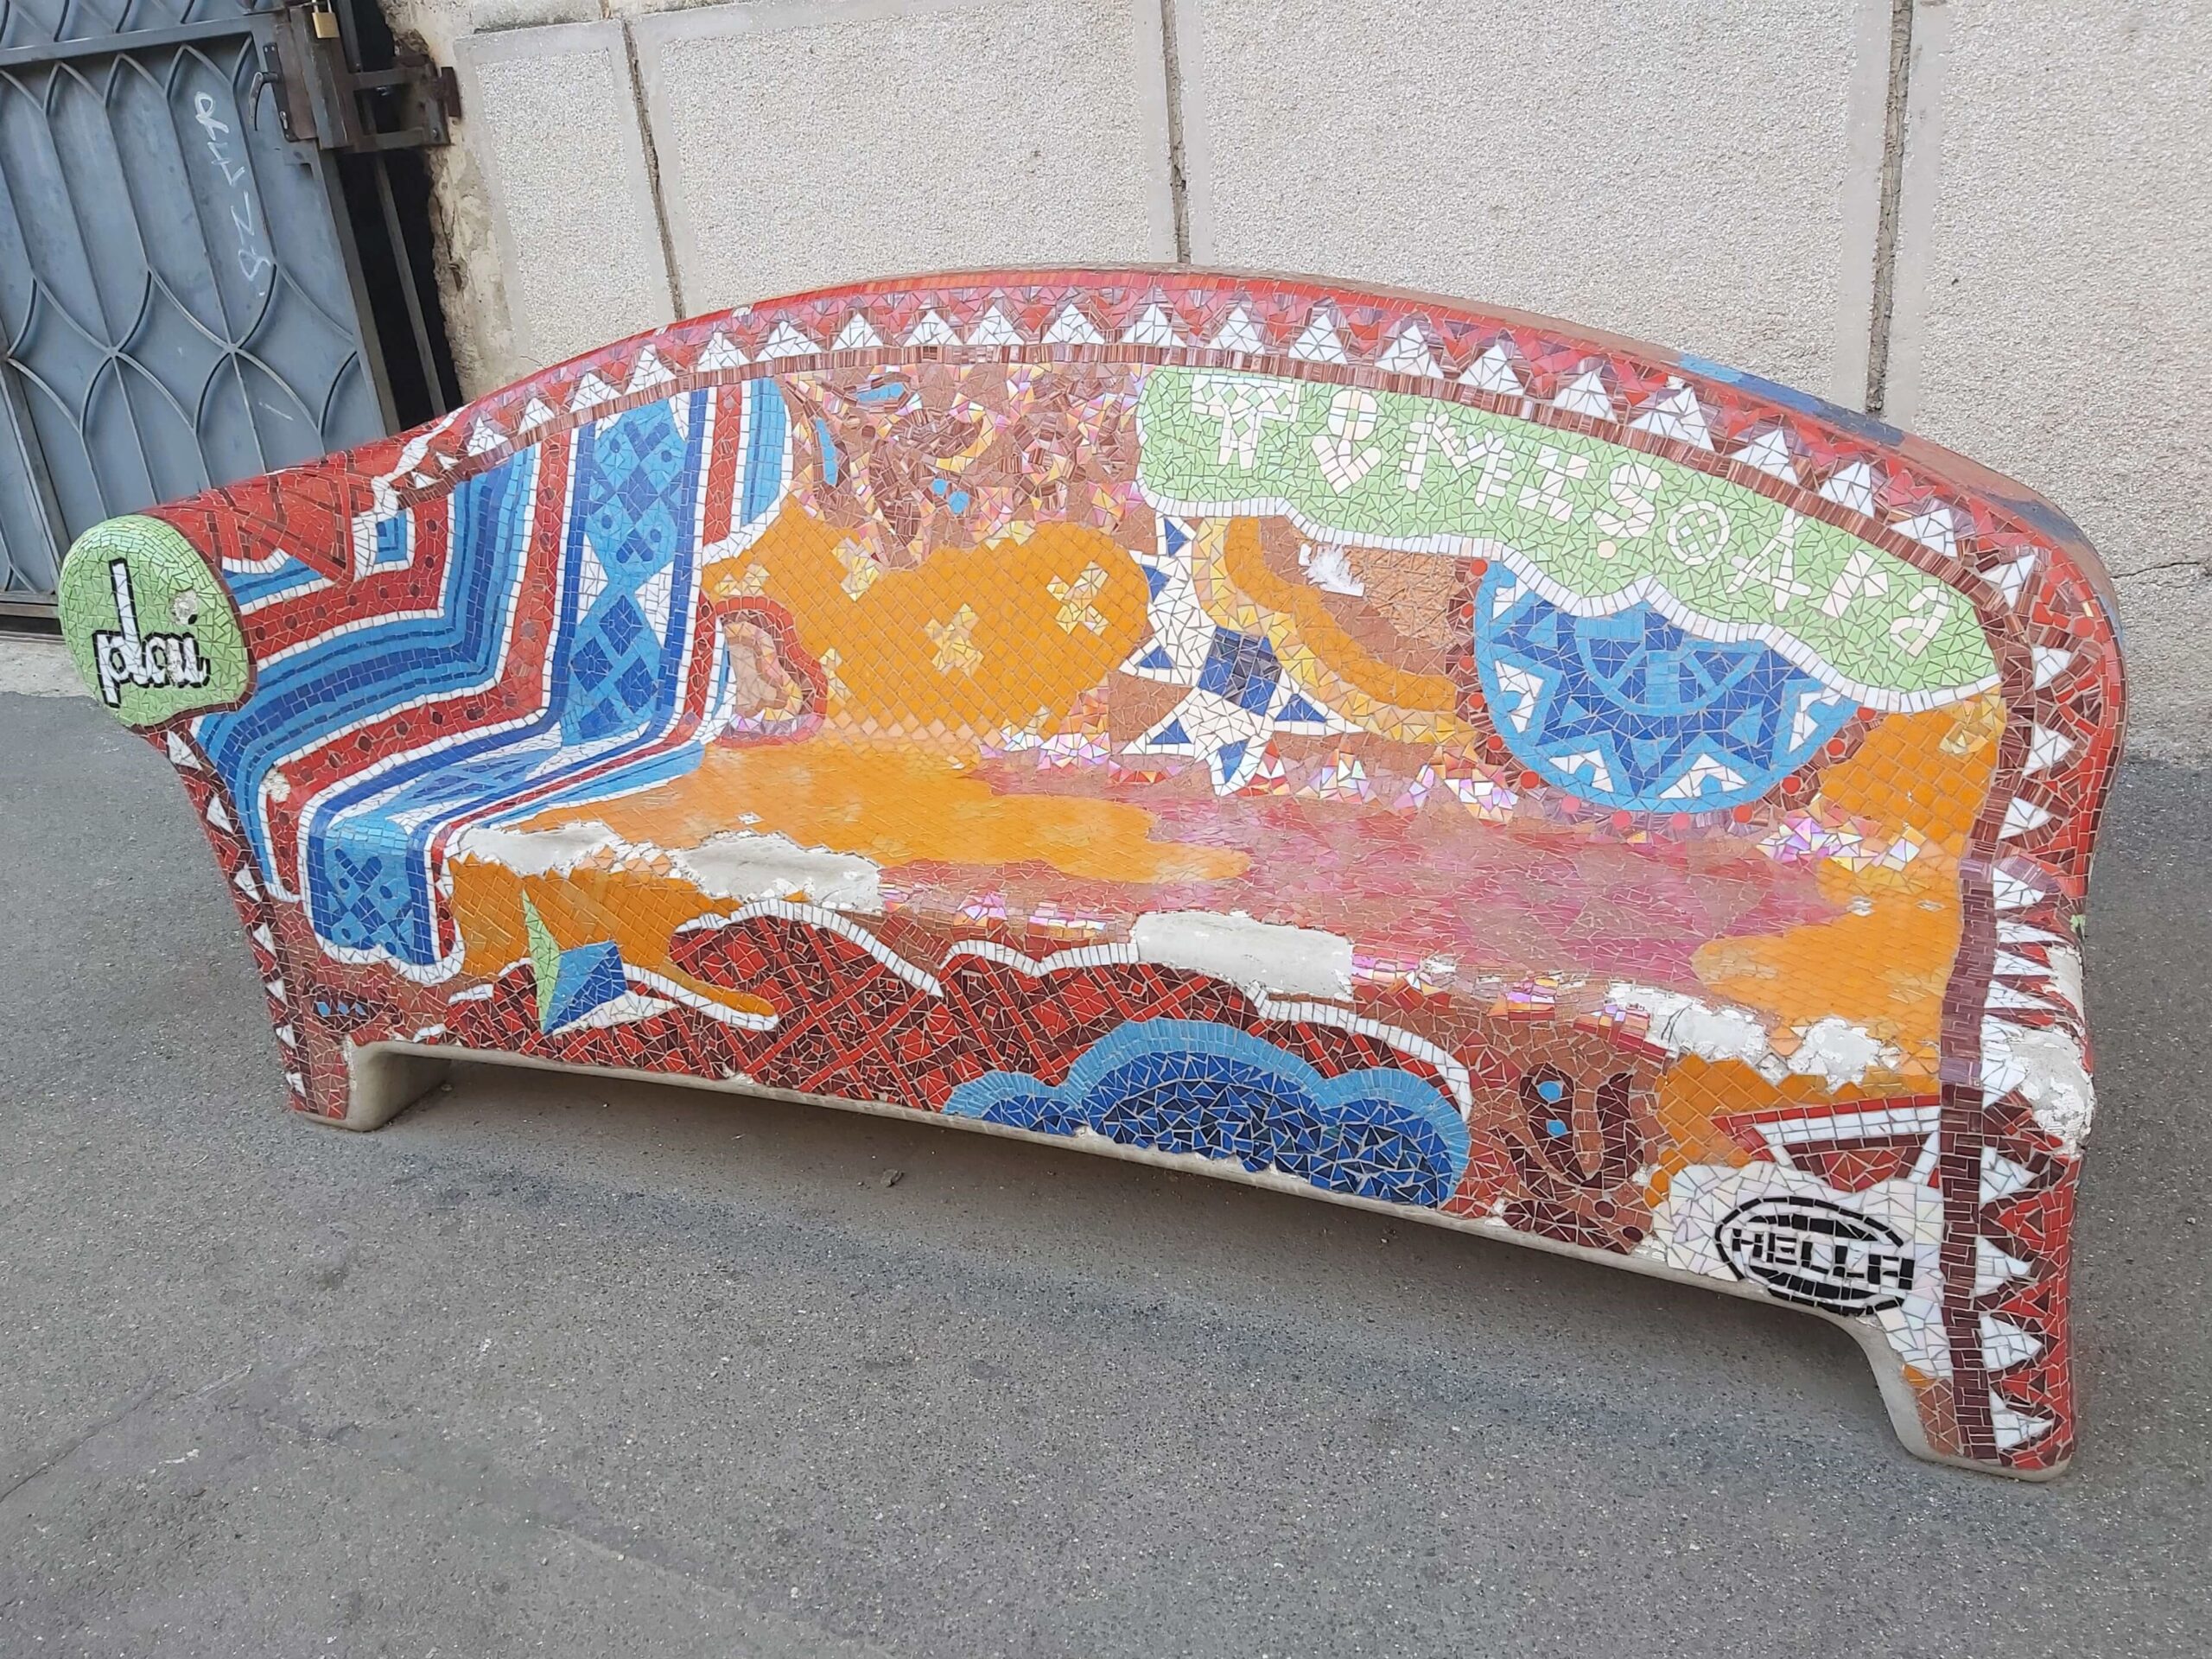 Colourful bench in Timisoara, Romania